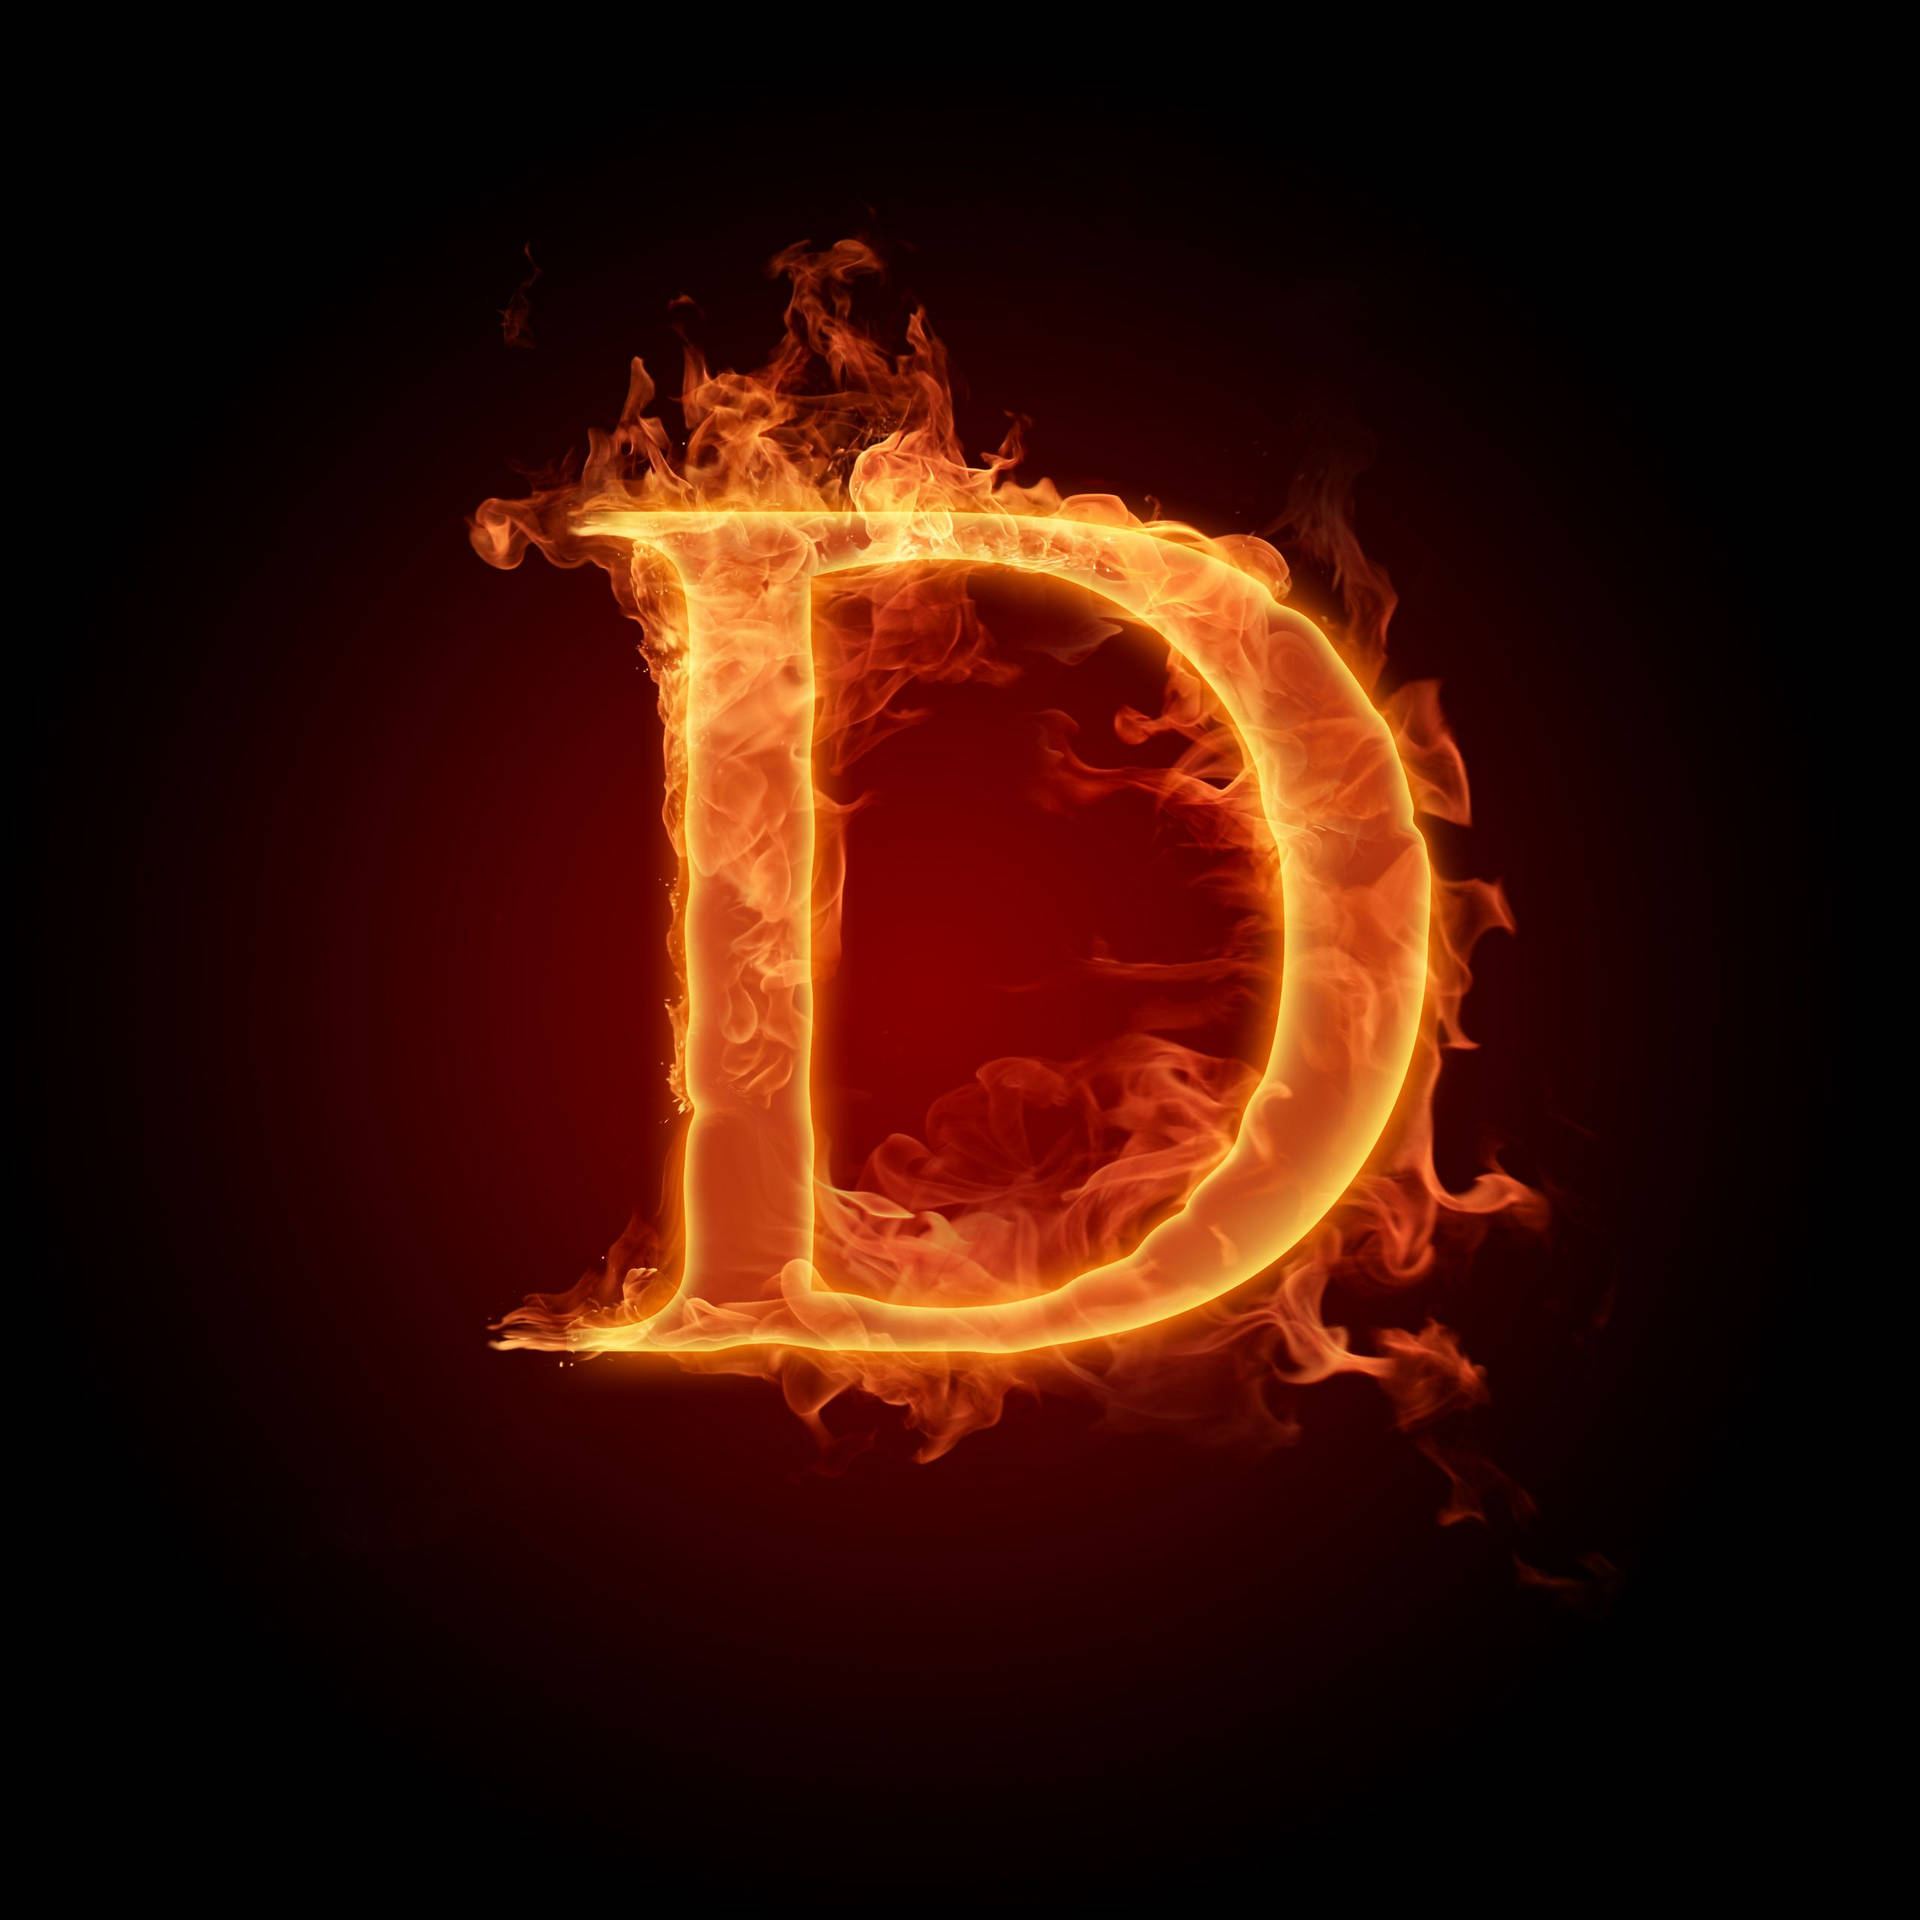 Burning Letter D In The Dark